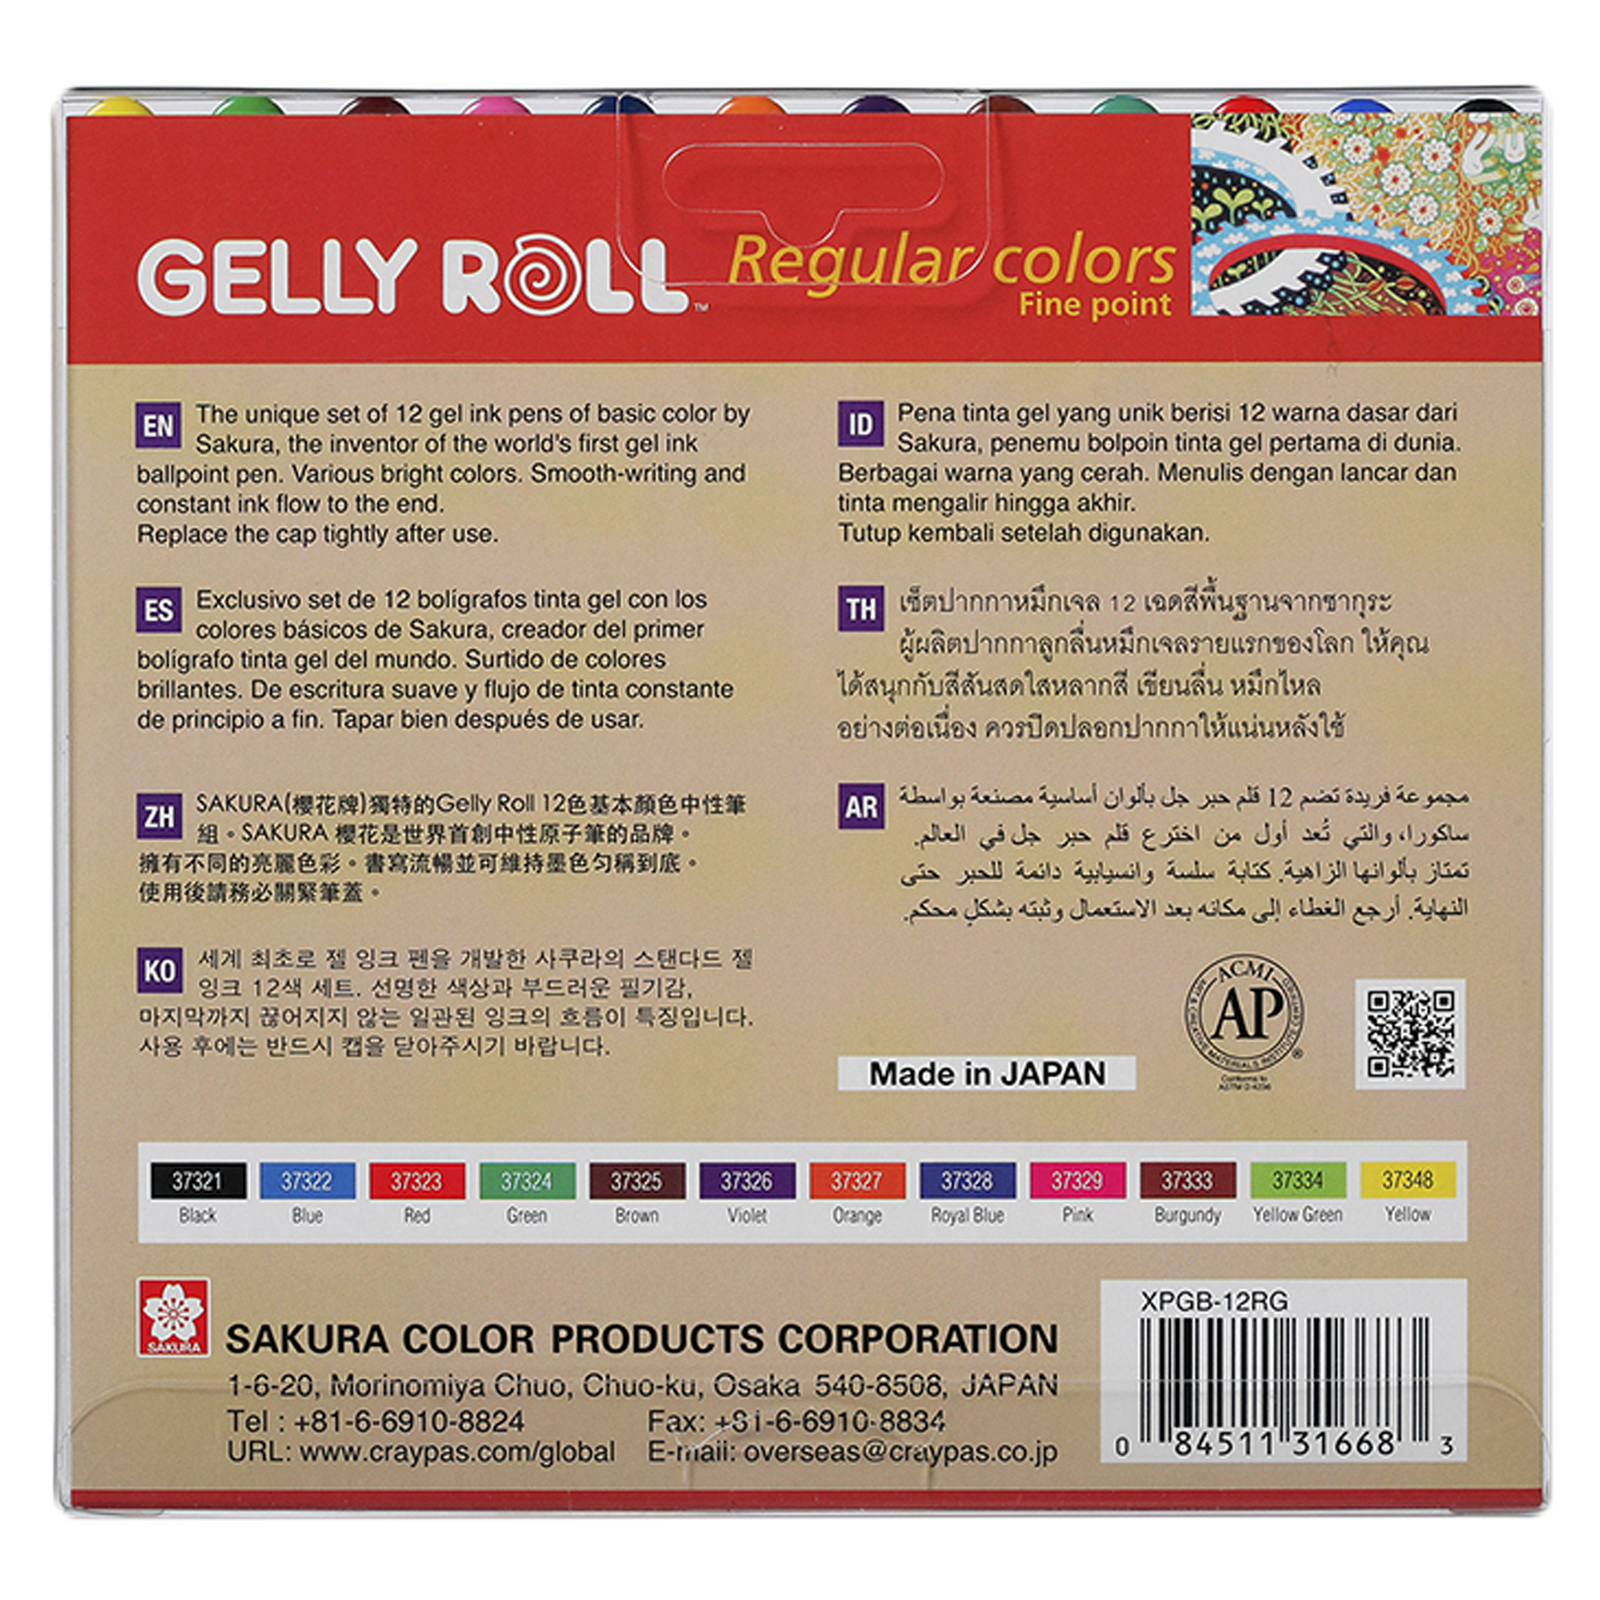 GELLY ROLL - 12 plumas de gel de colores regulares